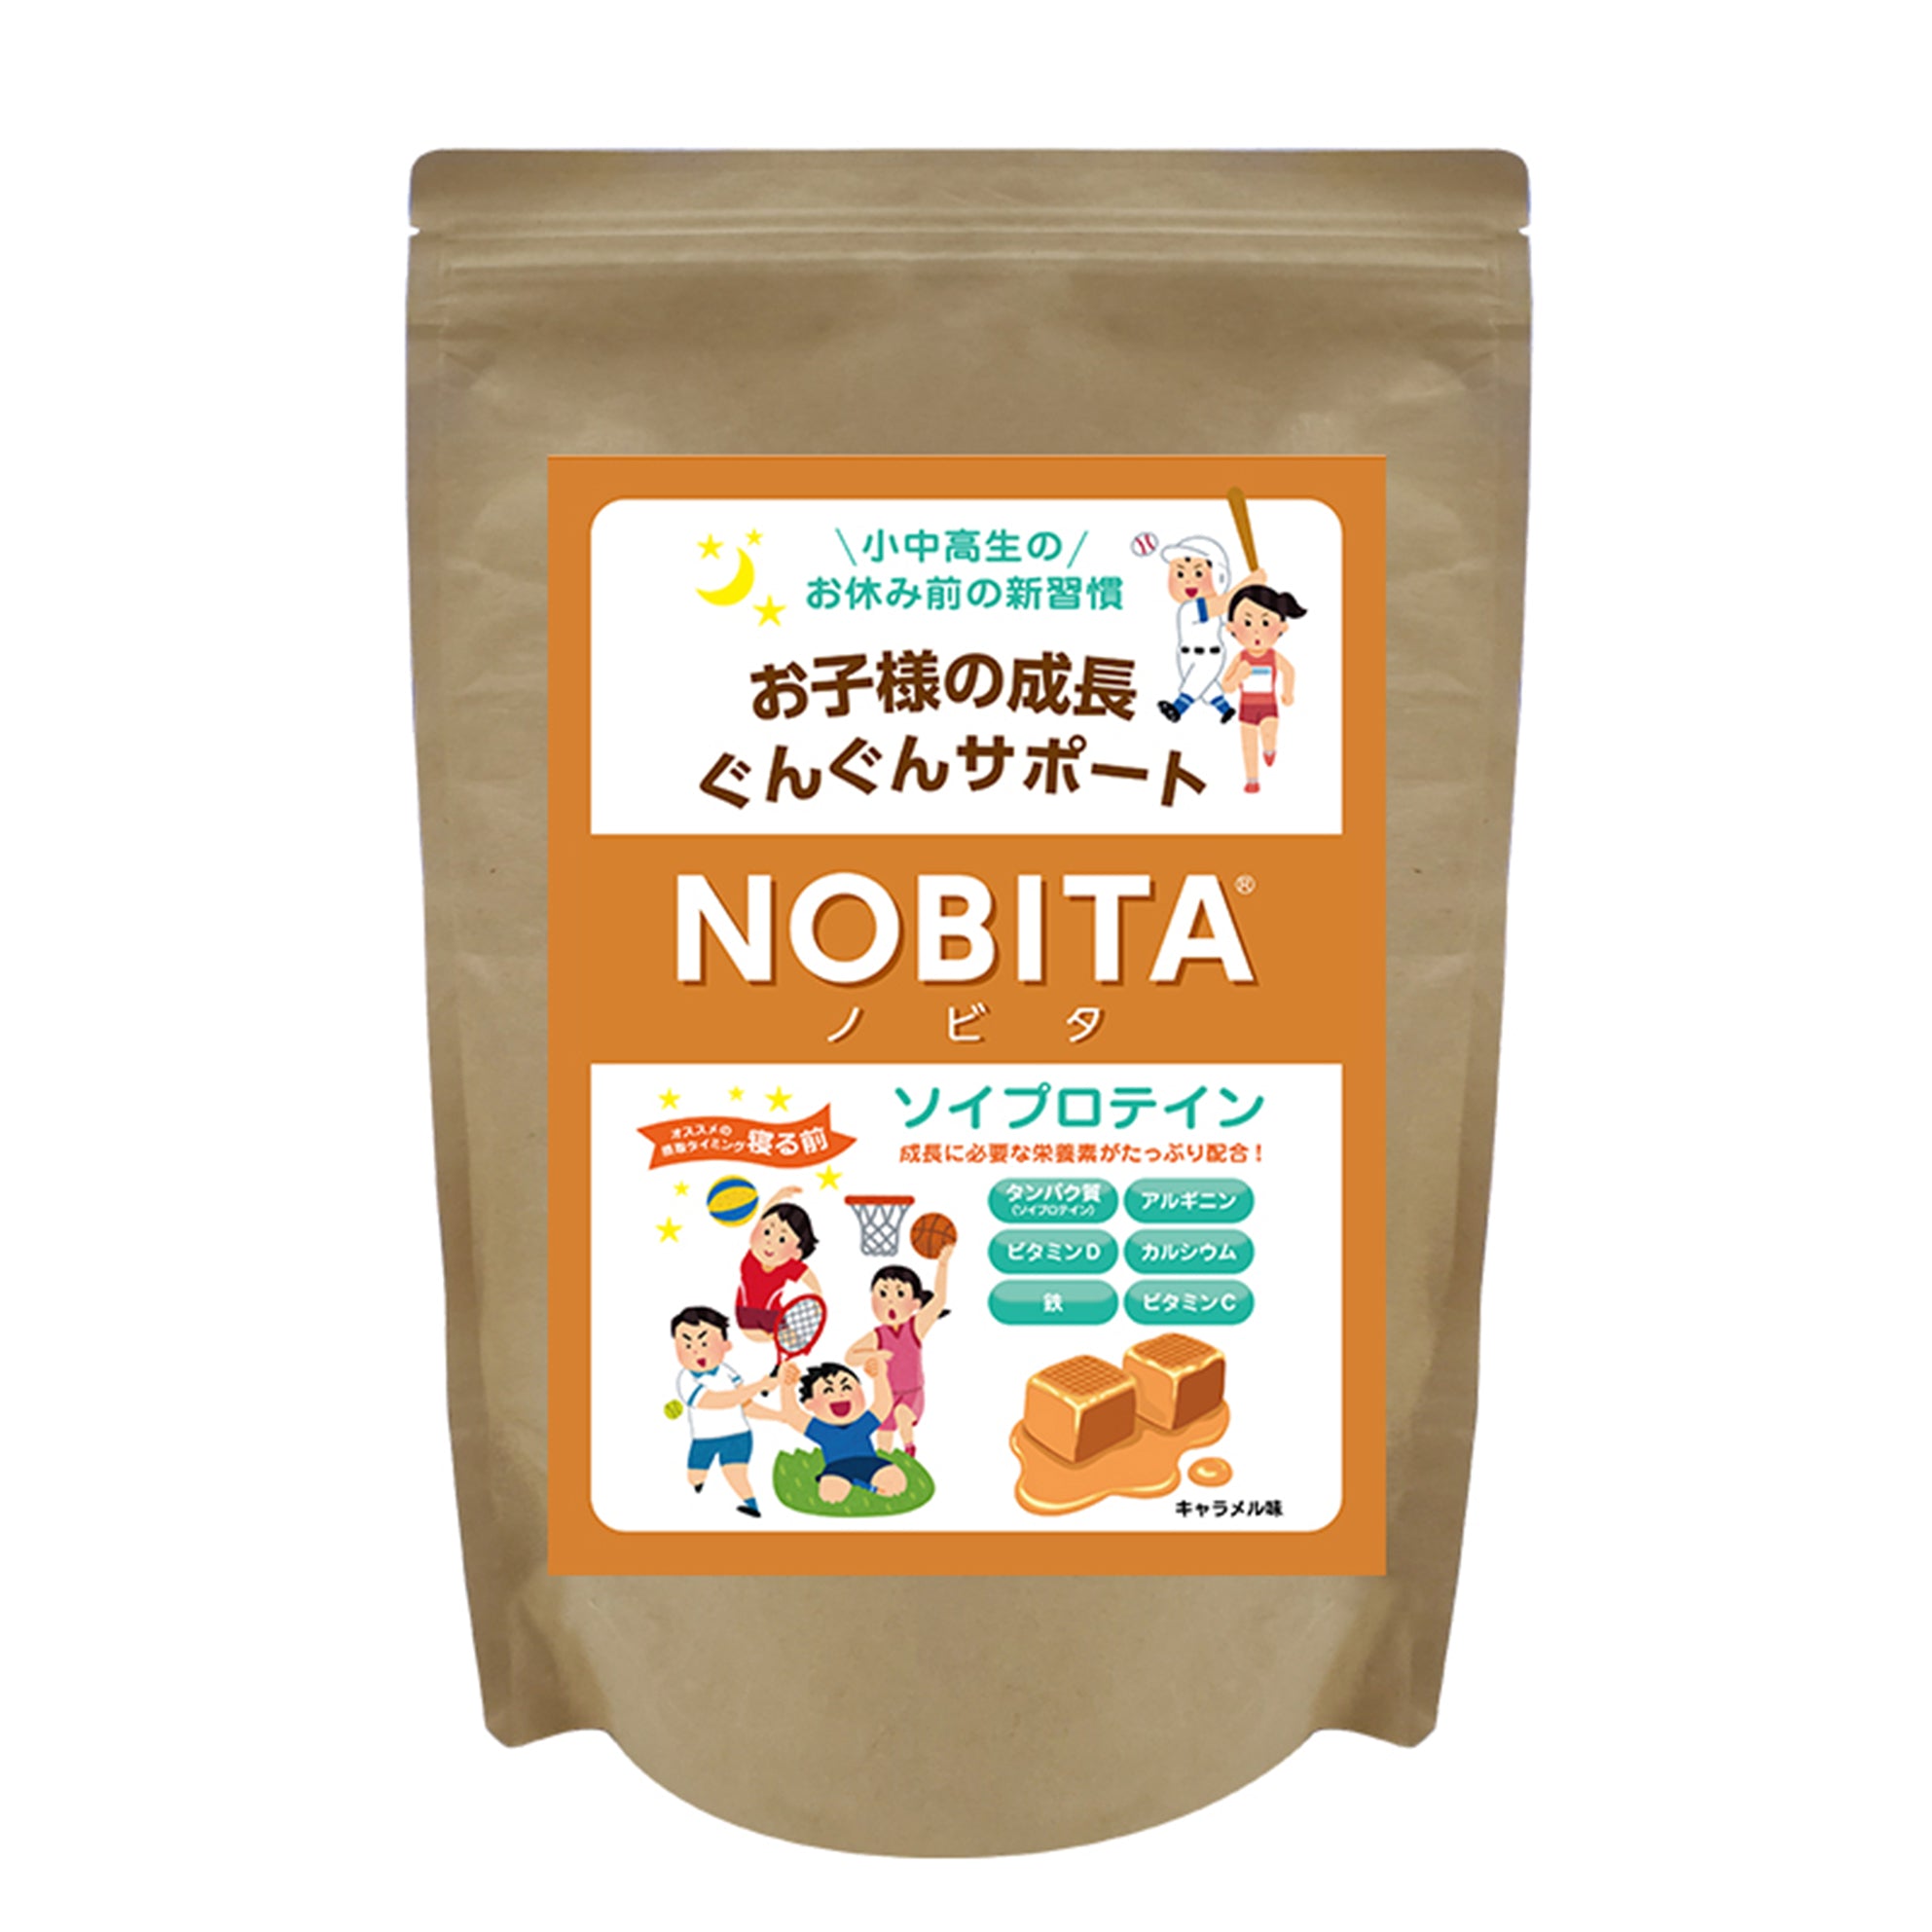 NOBITAソイプロテイン - キャラメル味 600g – NOBITA-SoyProtein